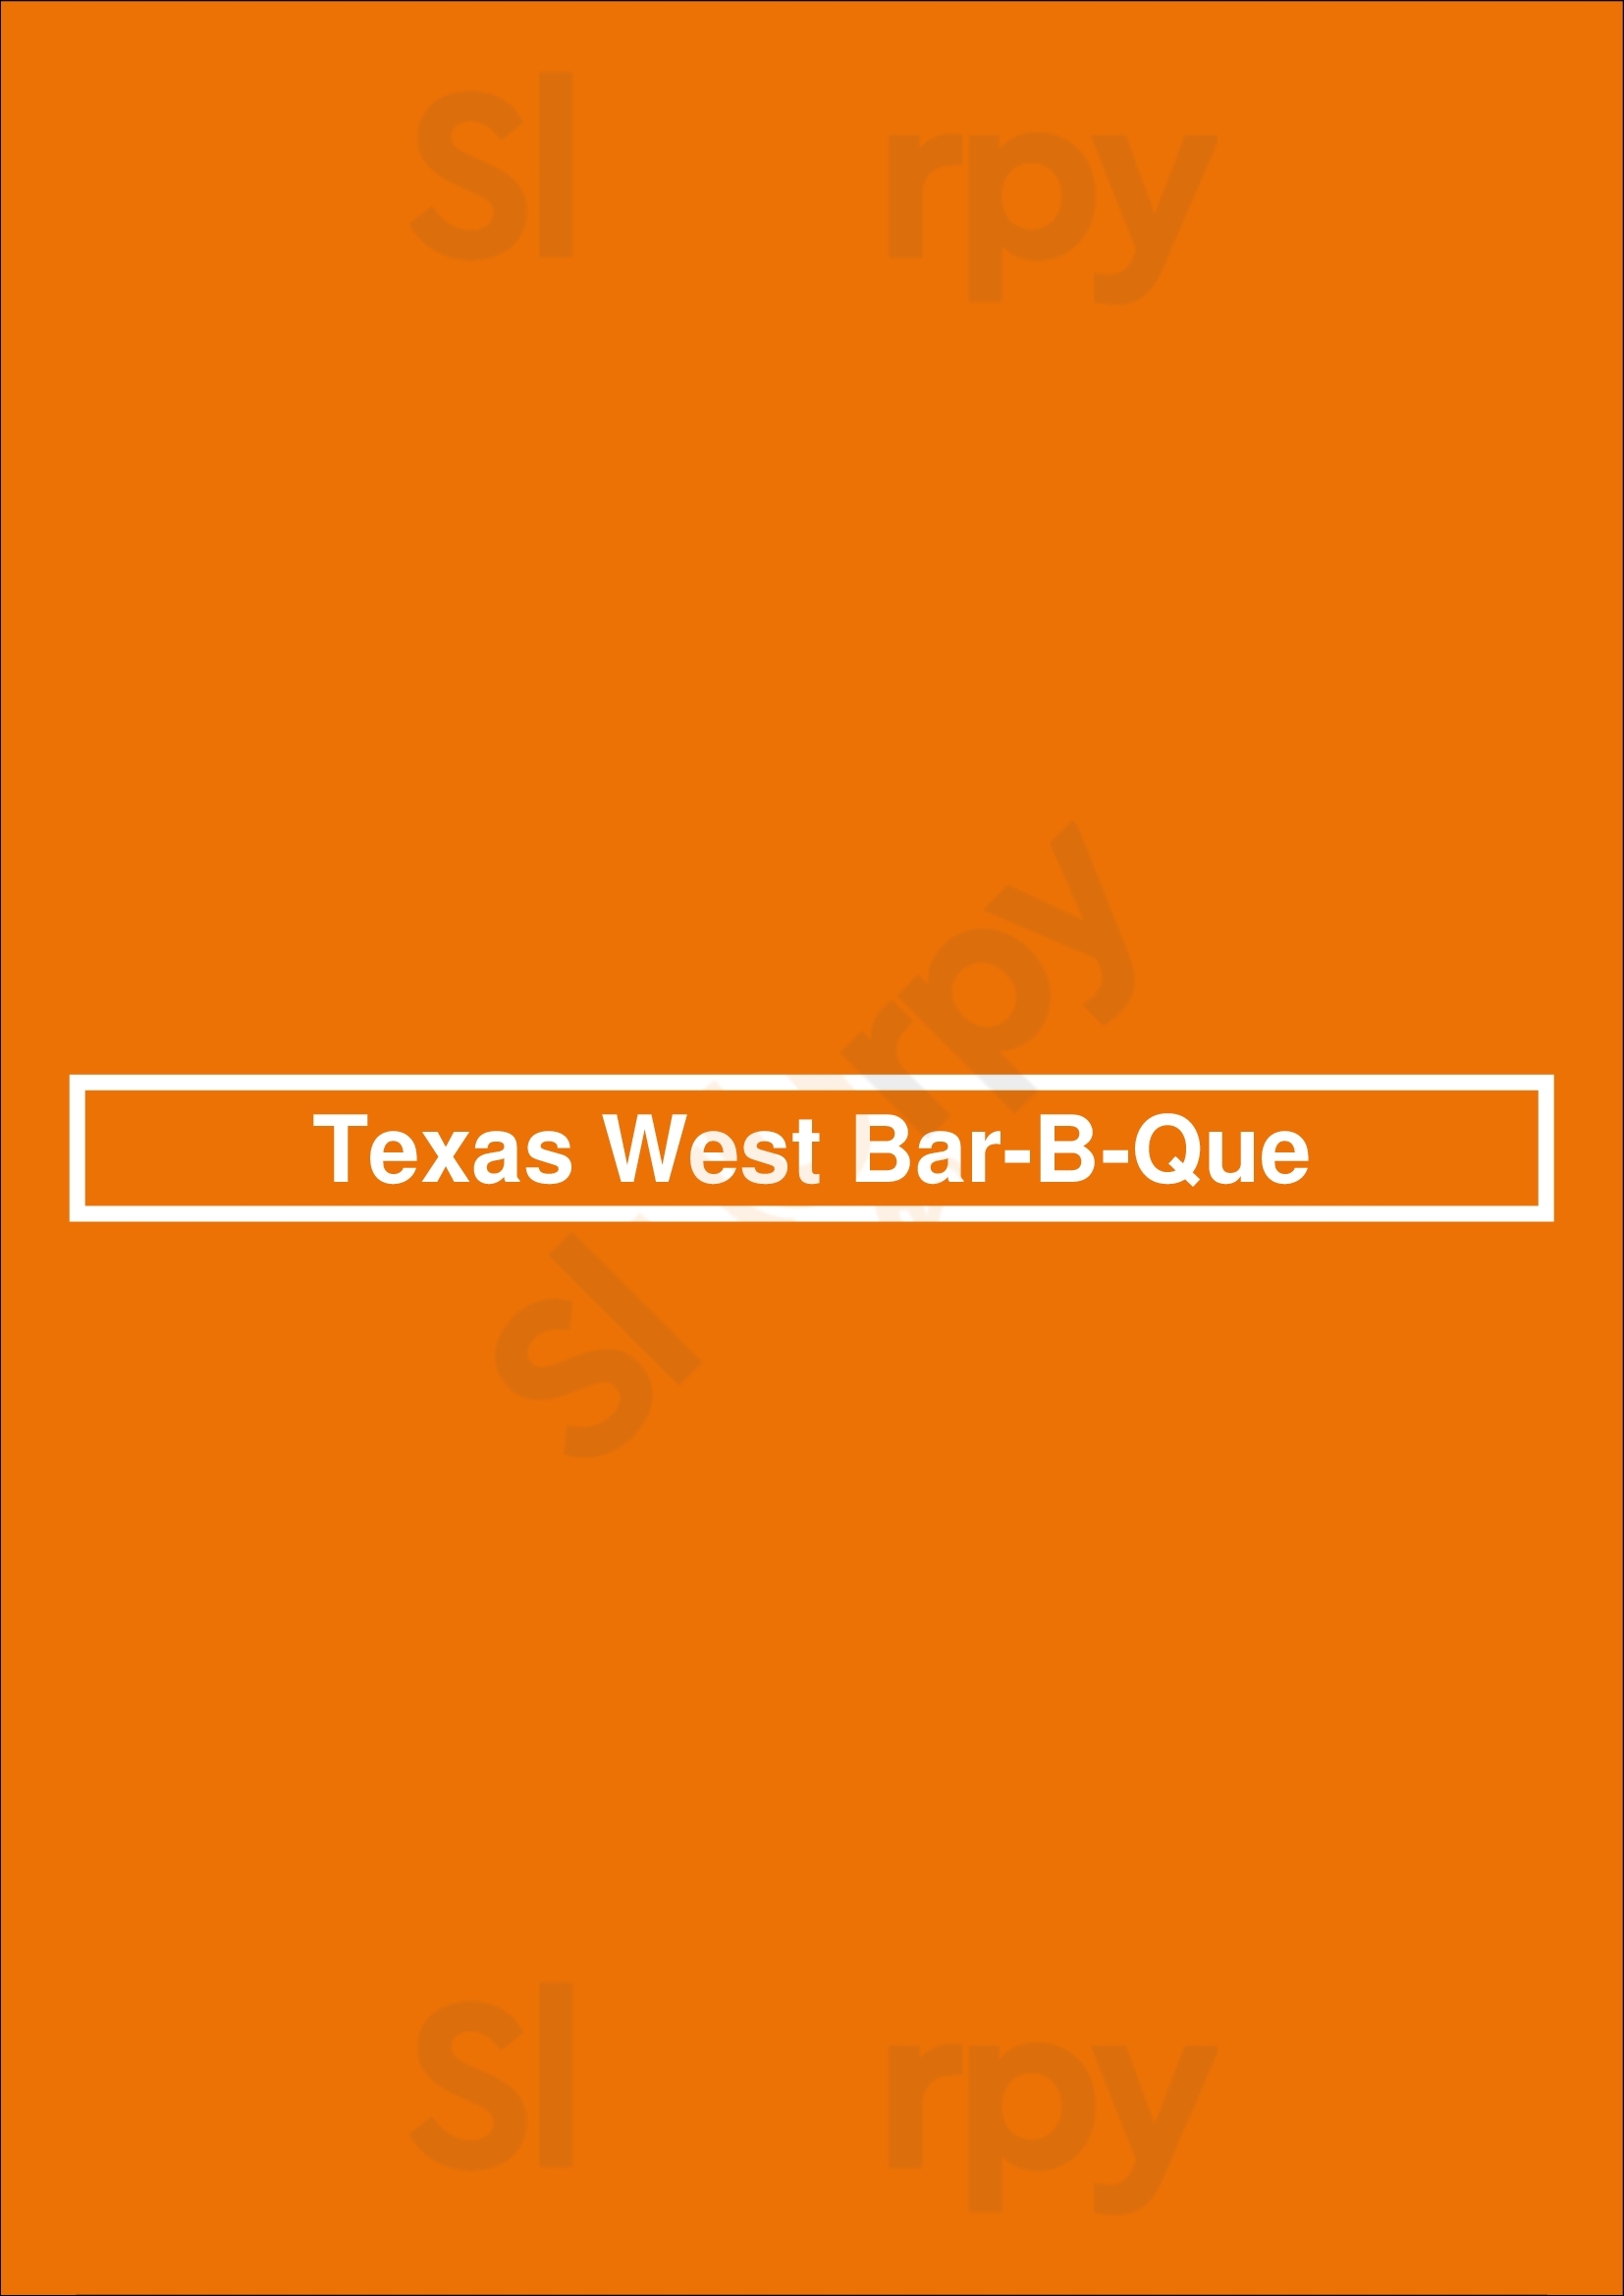 Texas West Bar-b-que Sacramento Menu - 1